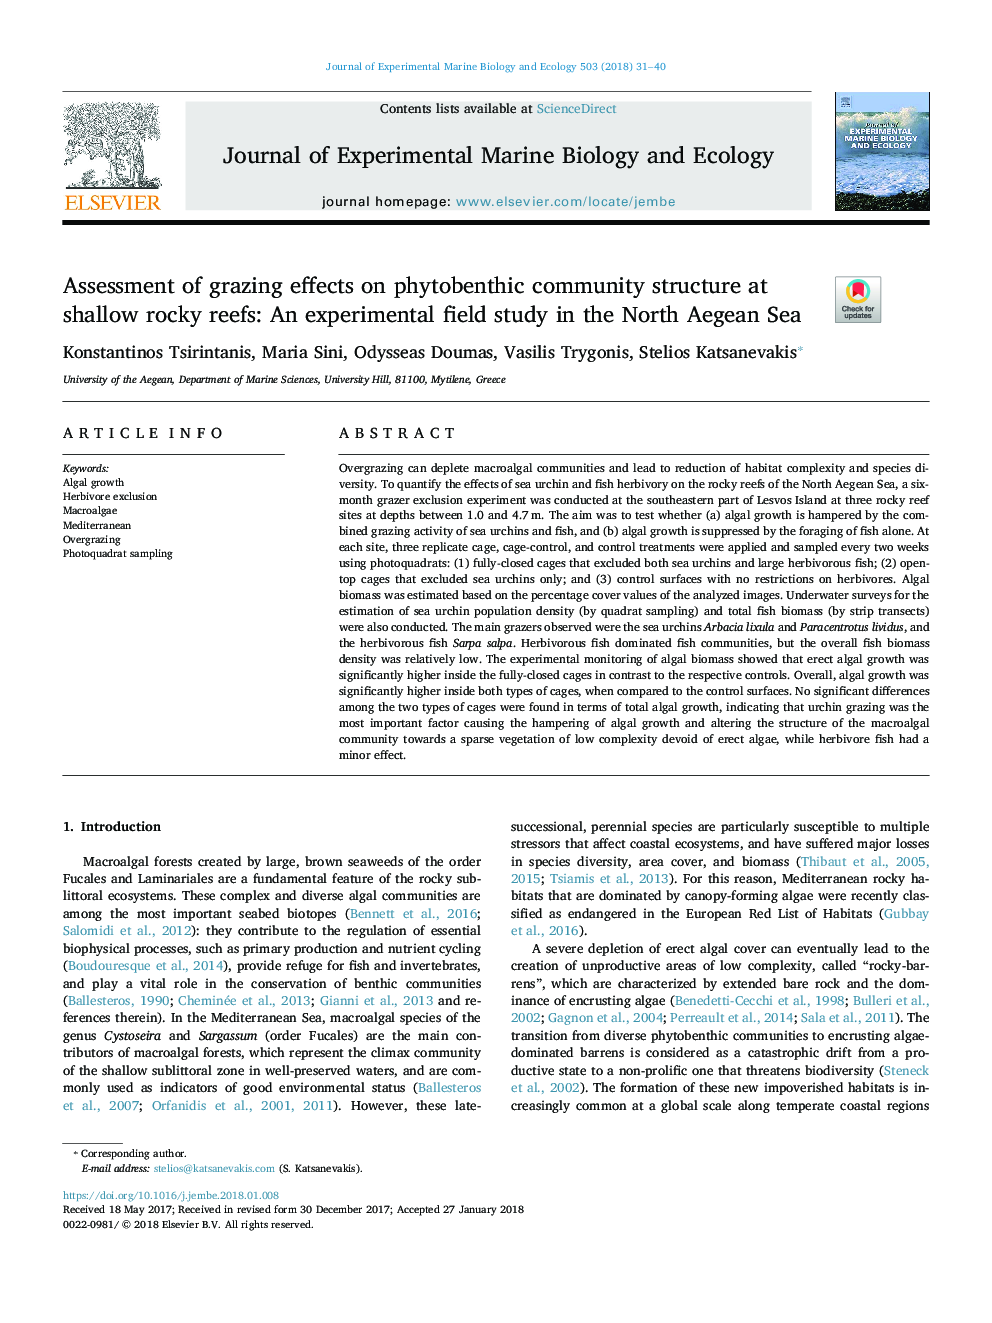 ارزیابی اثرات چرخه بر ساختار جامعه فیتو بنوتس در صخره های کم عمق سنگی: یک مطالعه آزمایشگاهی در دریای شمال دریای اژه 